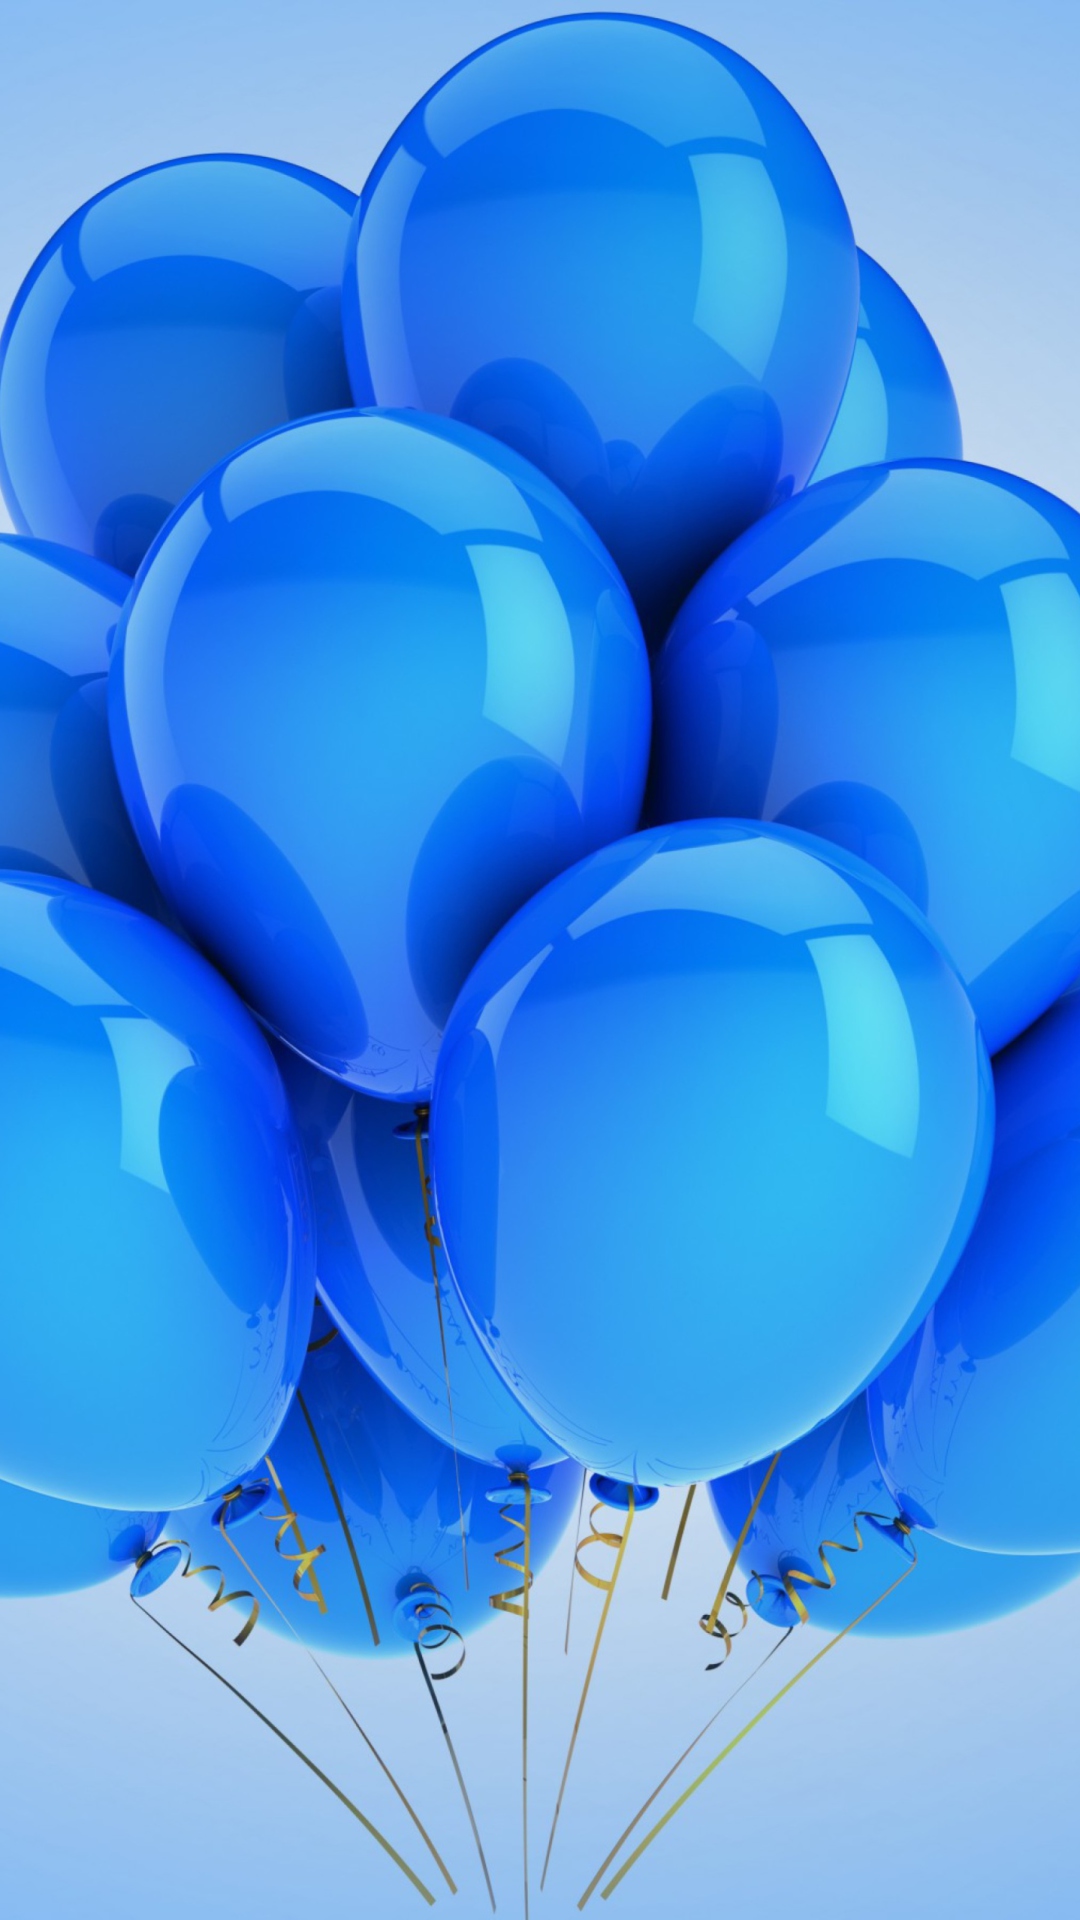 Blue Balloons wallpaper 1080x1920